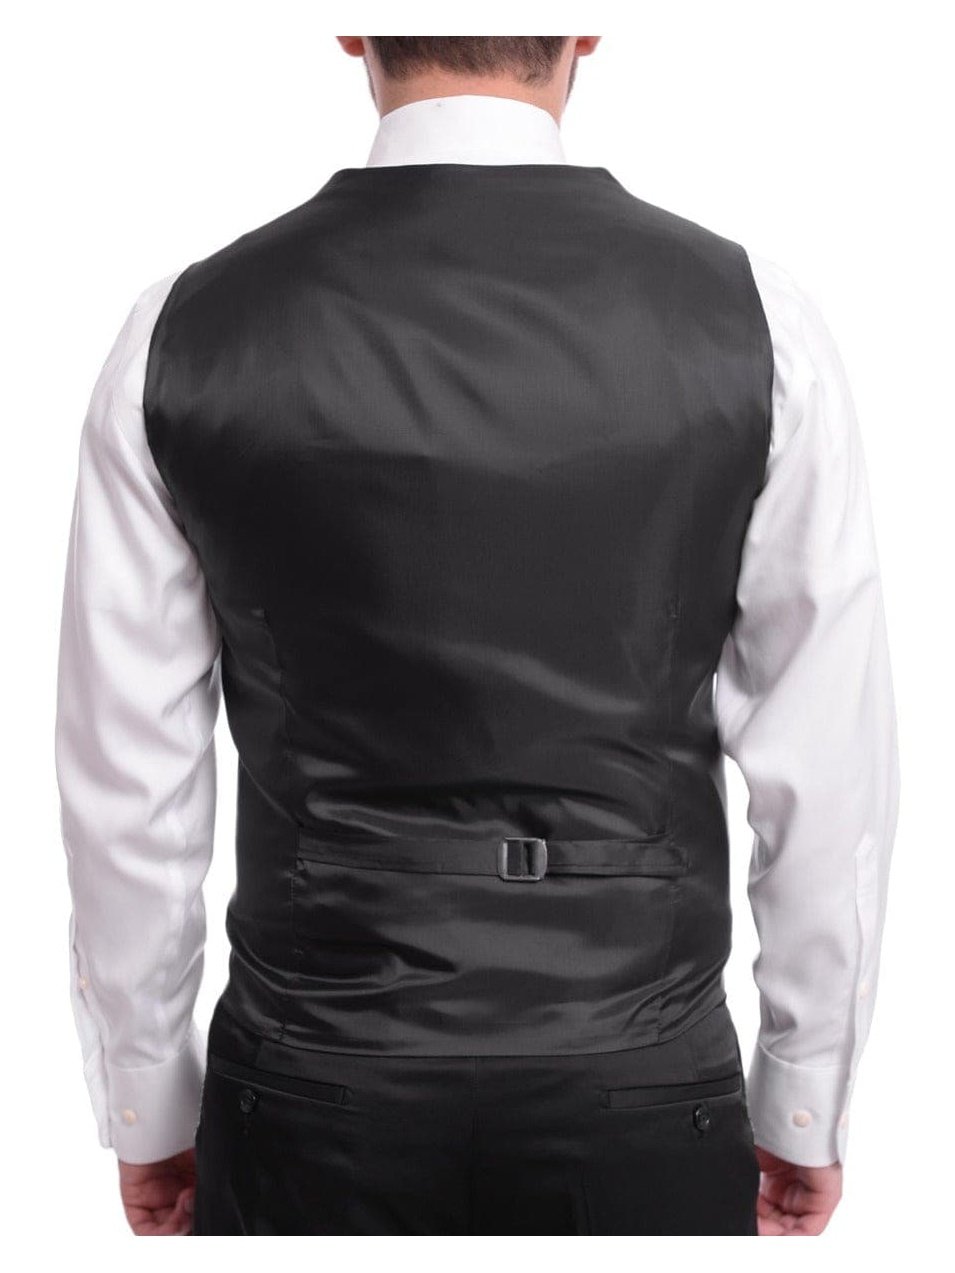 Cemden Sale Suits Cemden Slim Fit Black Sparkled One Button Three Piece Tuxedo Suit